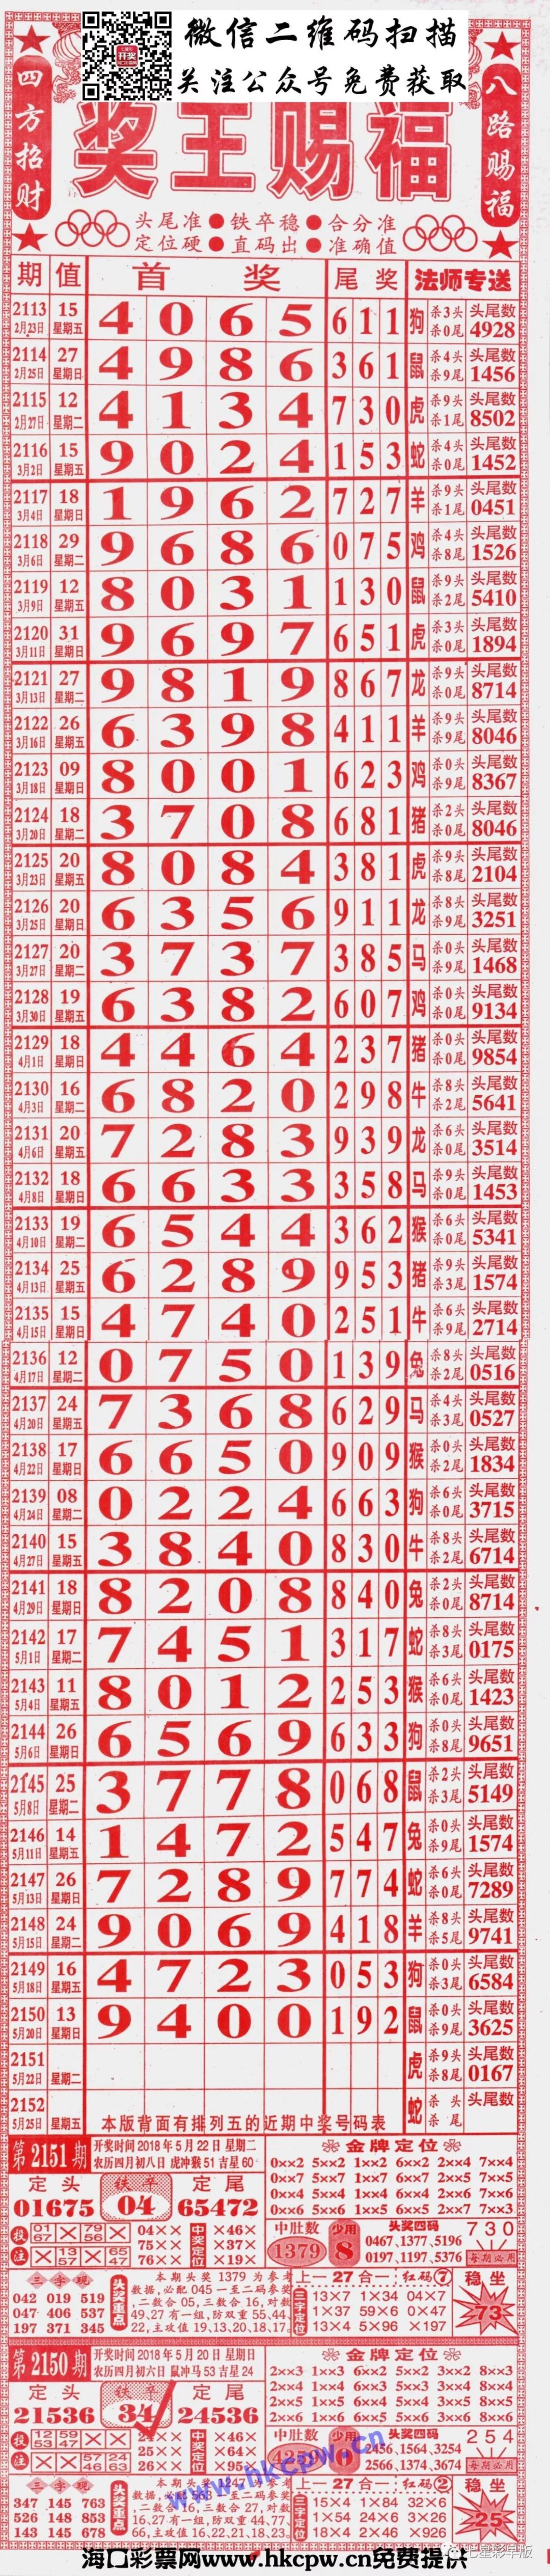 2151期七星彩长条:808,粤海局王,老鼠精,至尊,三点红,利民总版,新加坡